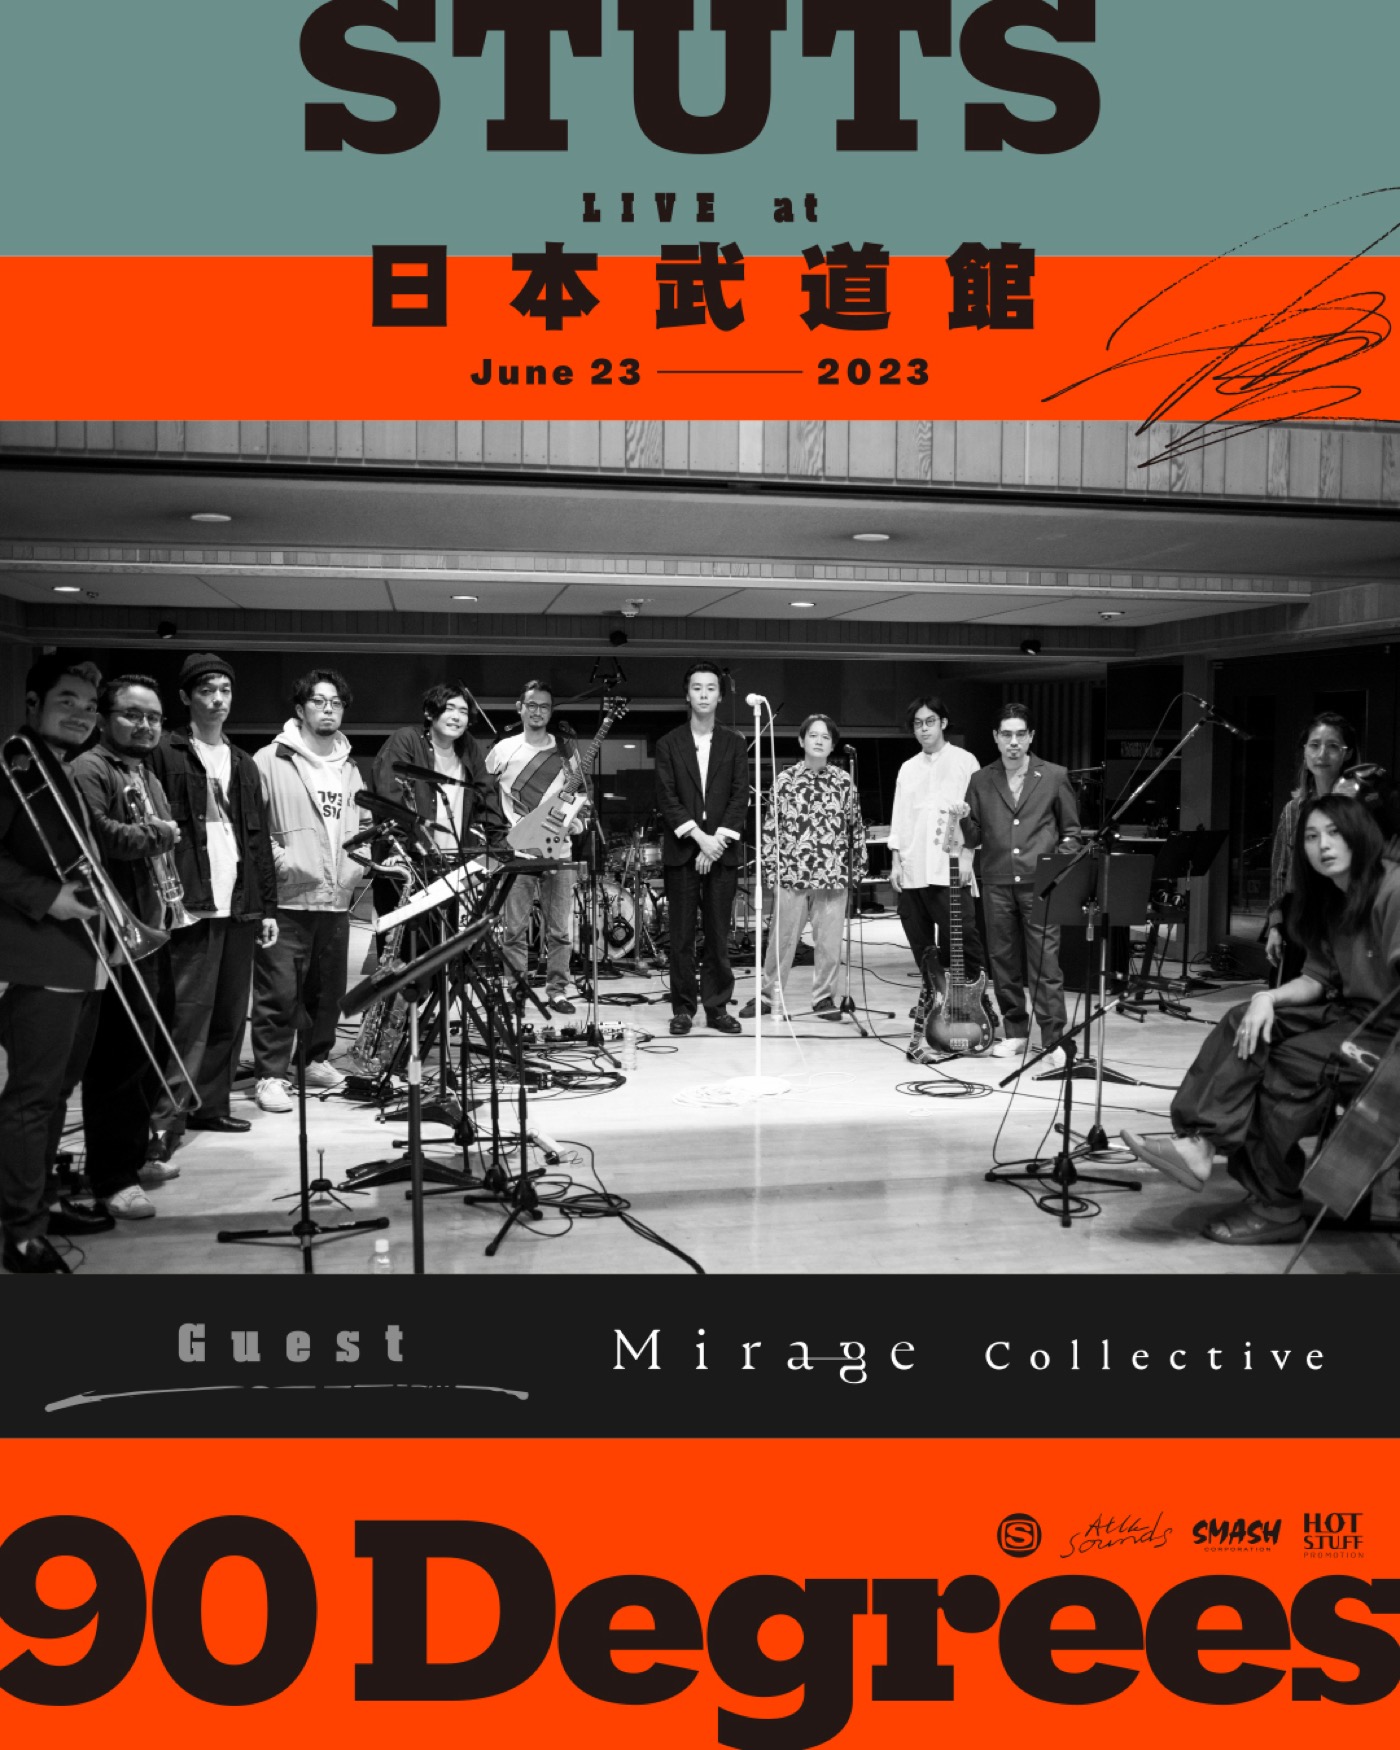 ドラマ『エルピス』主題歌で話題のMirage Collective、STUTSの日本武道館公演に出演決定